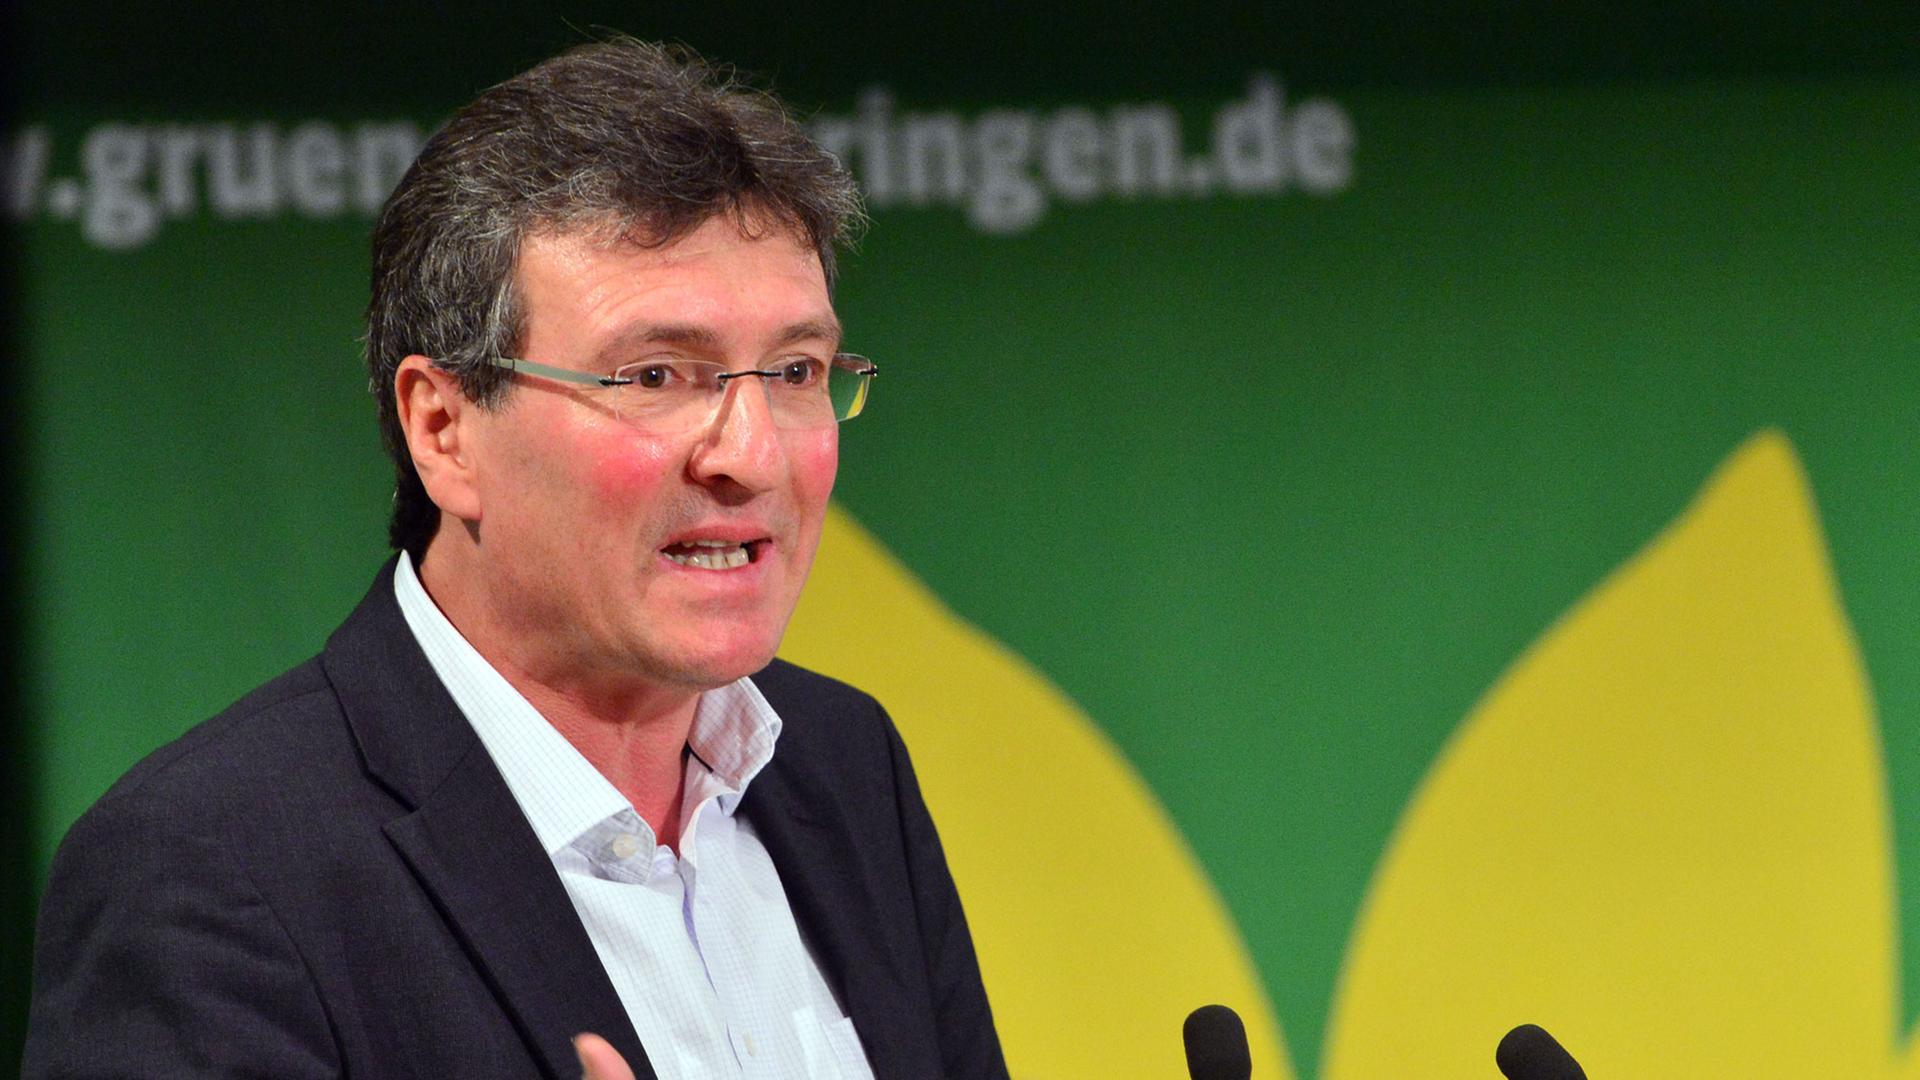 Der Landessprecher der Grünen in Thüringen, Dieter Lauinger.